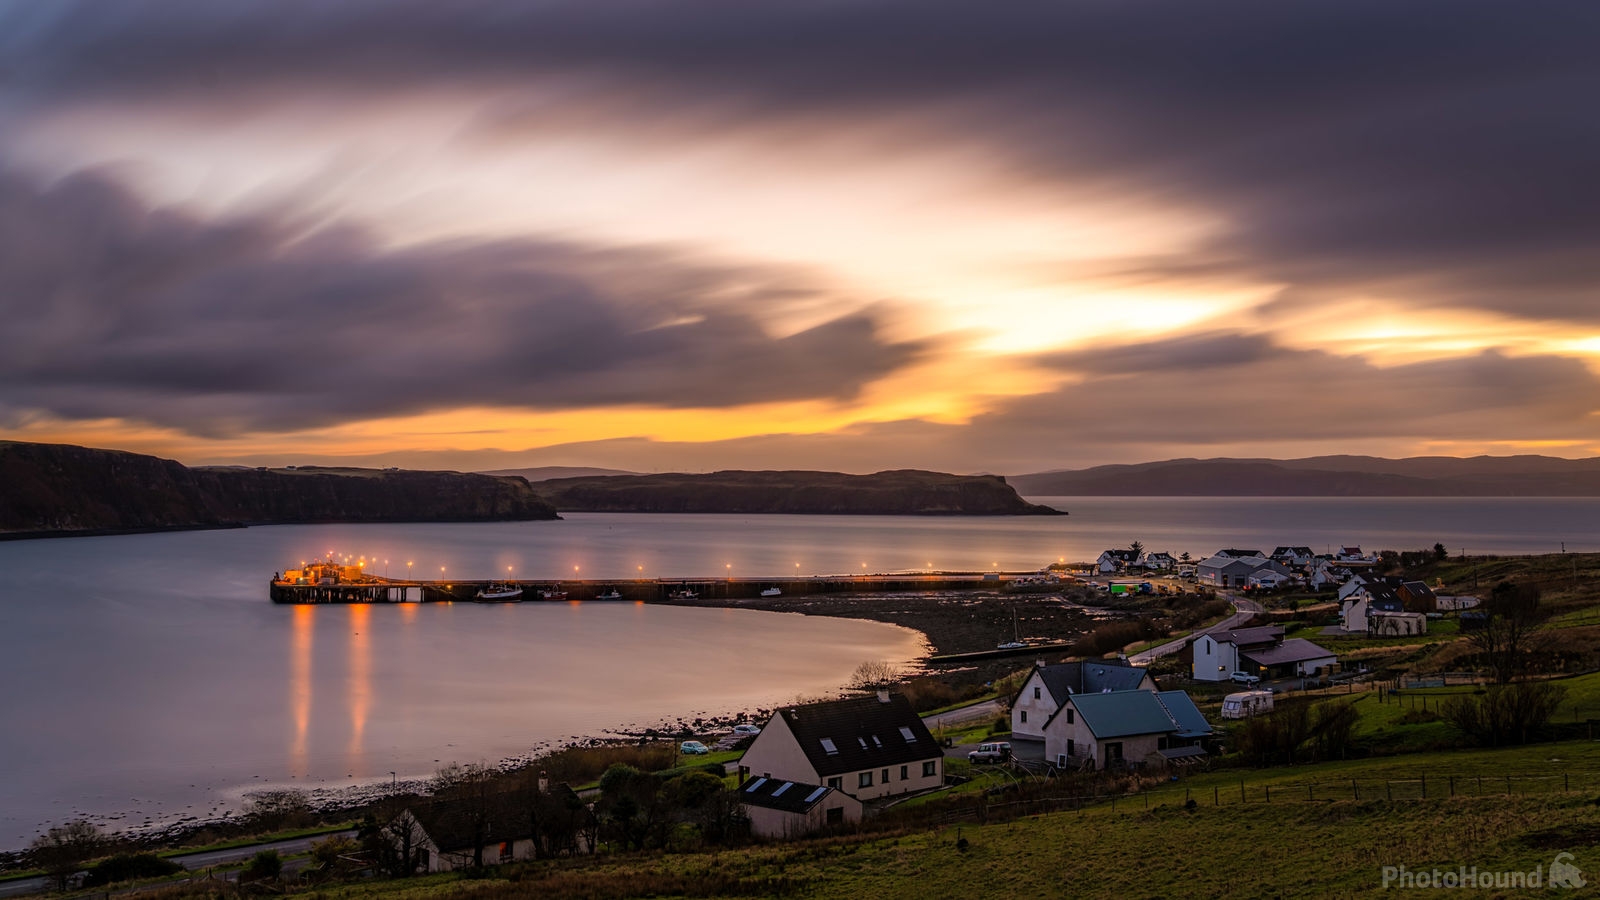 Image of Uig Bay, Isle of Skye by Jakub Bors